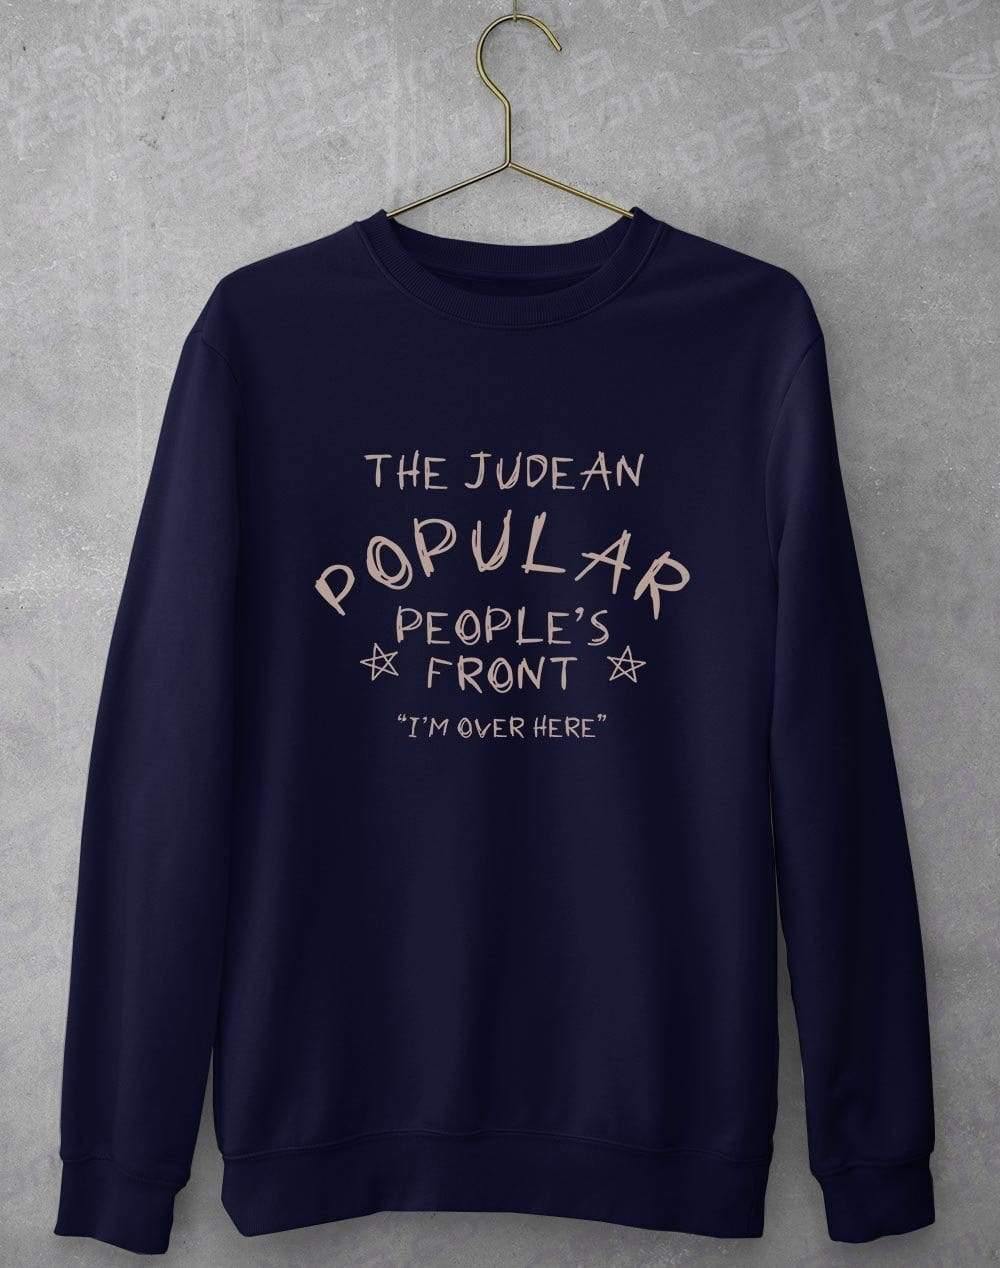 Judean Pupular Peoples Front Sweatshirt S / Navy  - Off World Tees